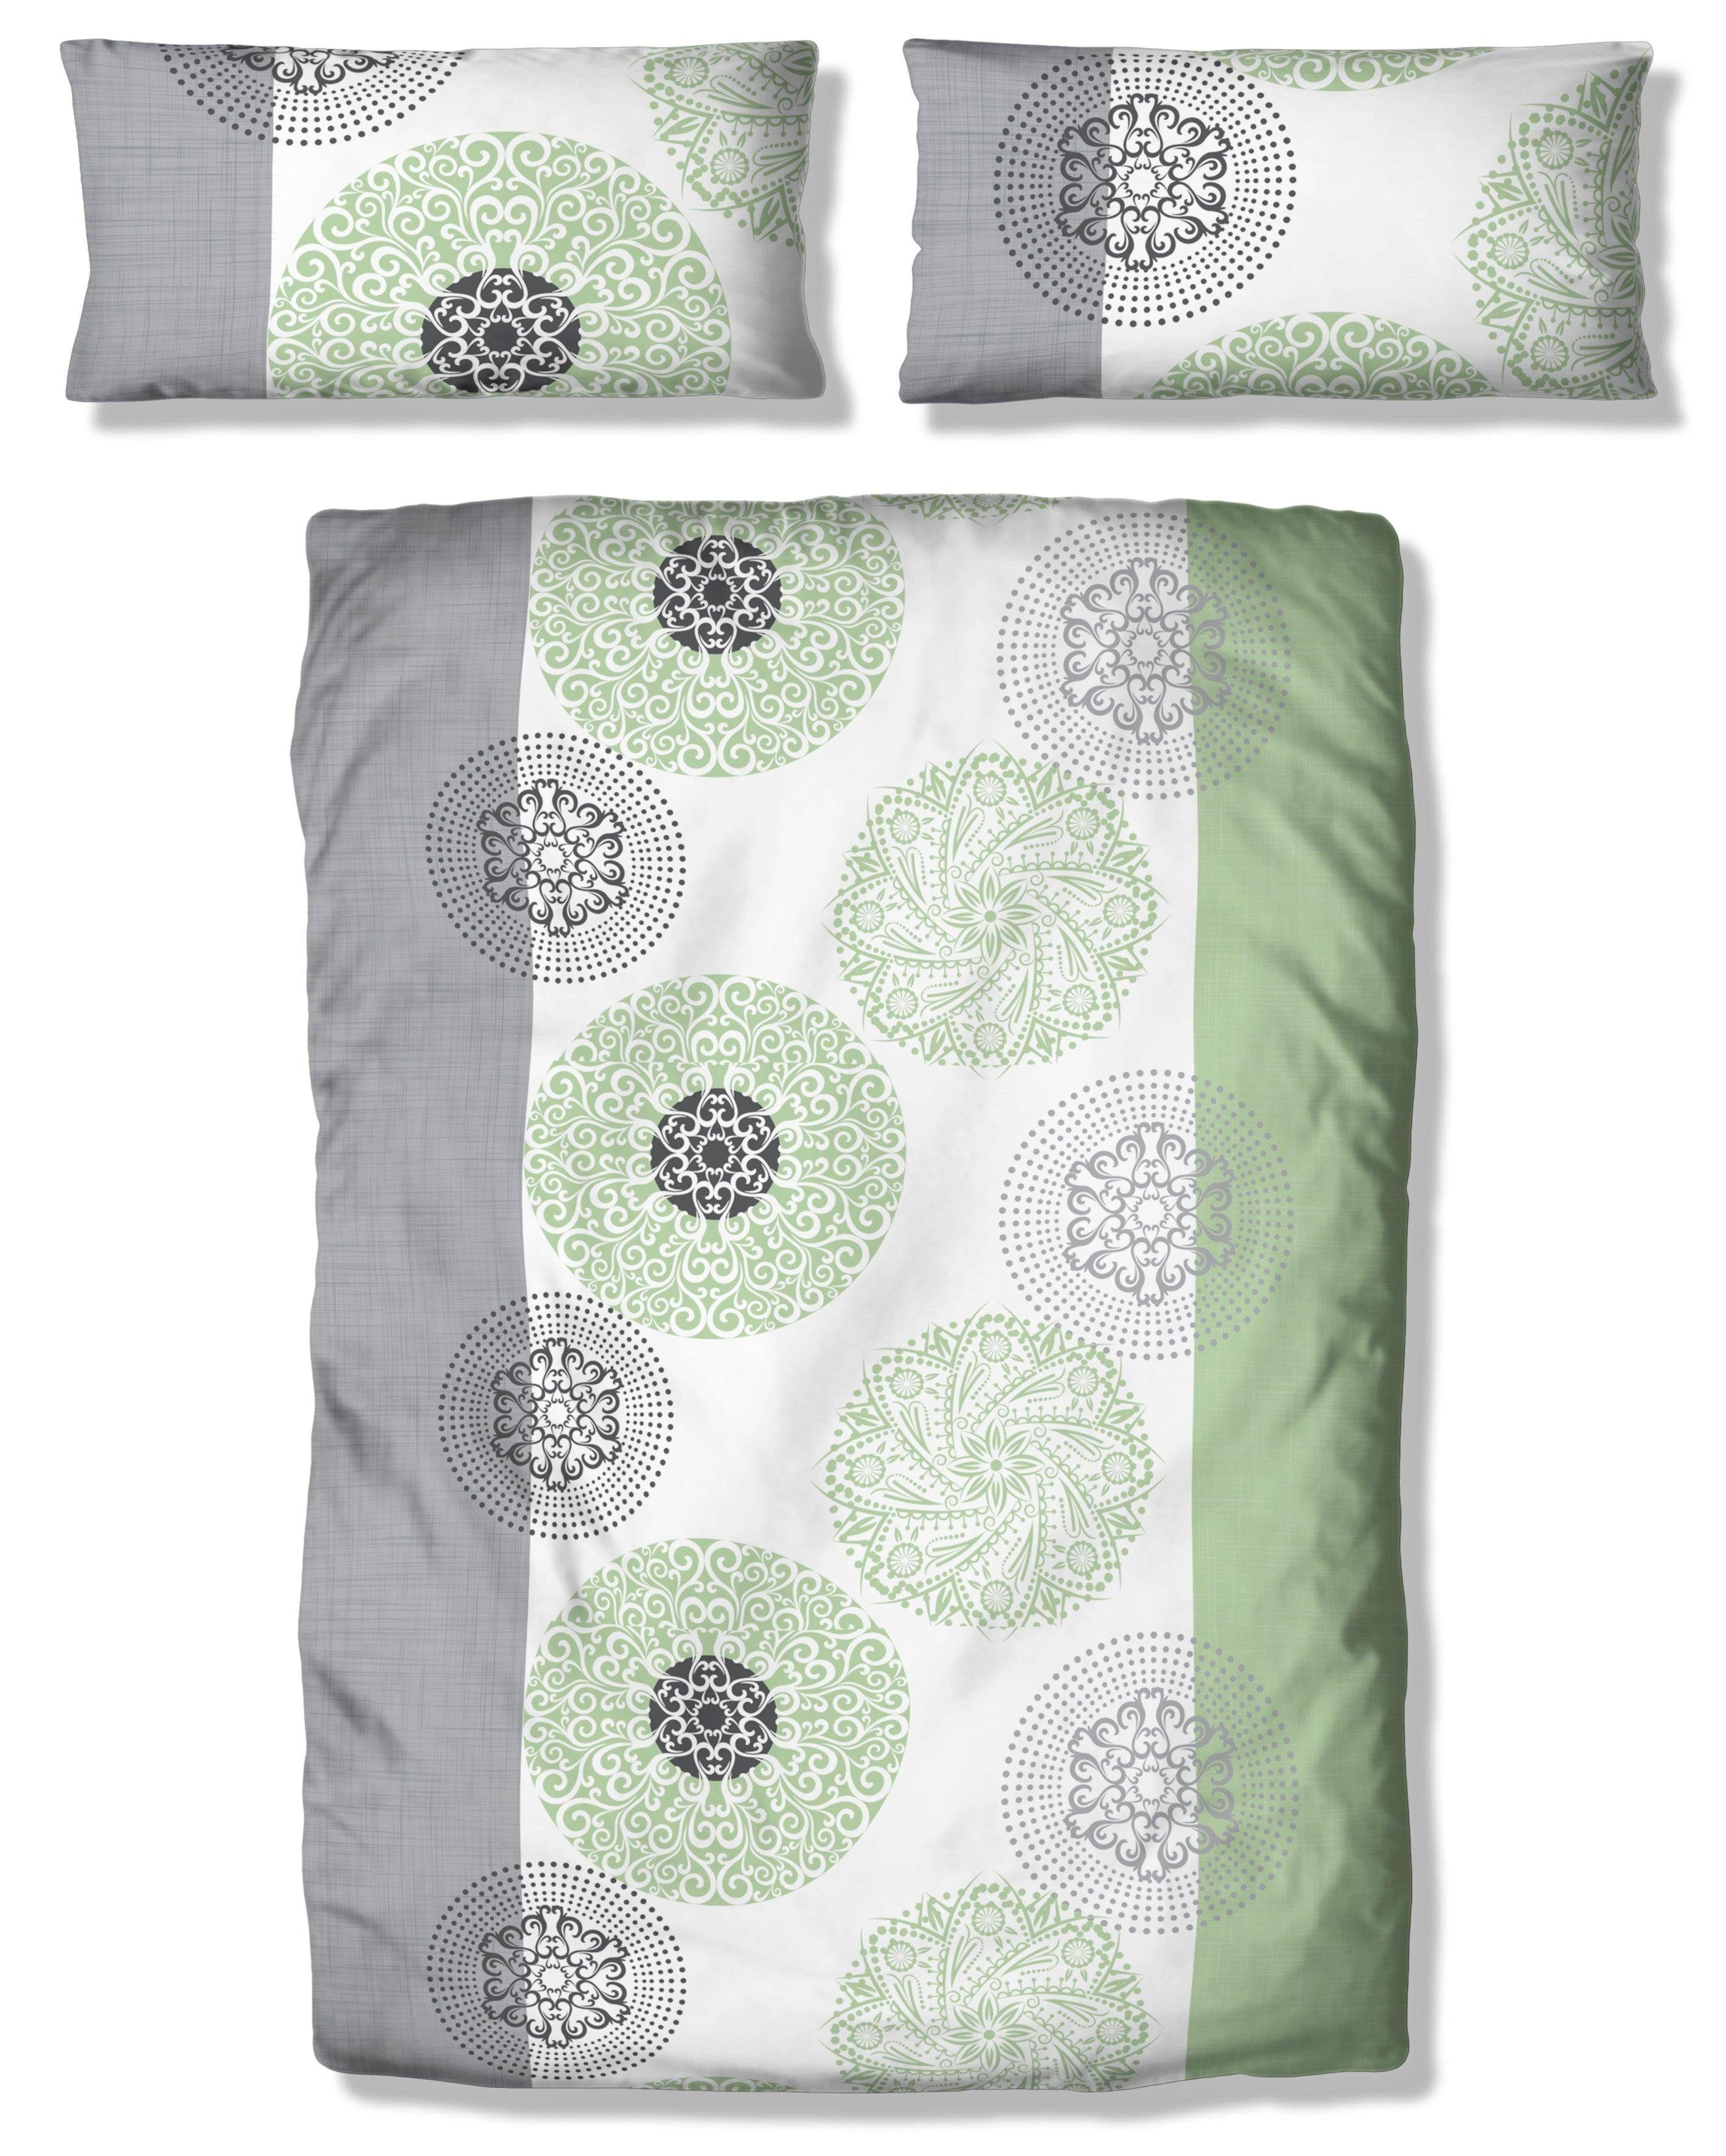 Bettwäsche Cison in Gr. 135x200 oder 155x220 cm, my home, Linon, 2 teilig, florale Bettwäsche aus Baumwolle hellgrün